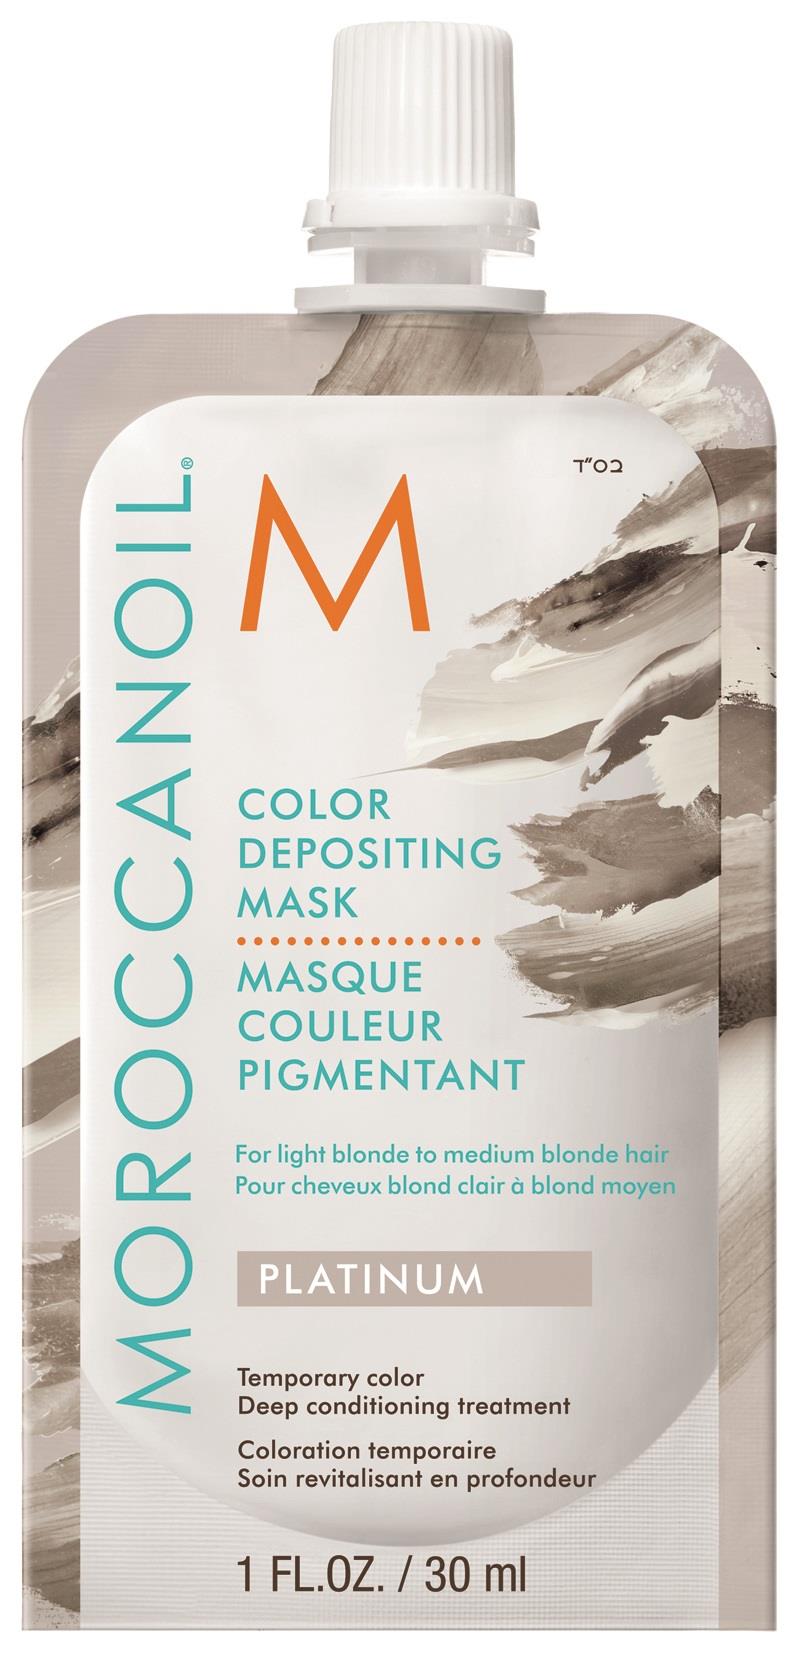 Mặt Nạ Dưỡng Moroccanoil Platinum Color Depositing Mask Bổ Sung Hạt Màu Bạc  30ml